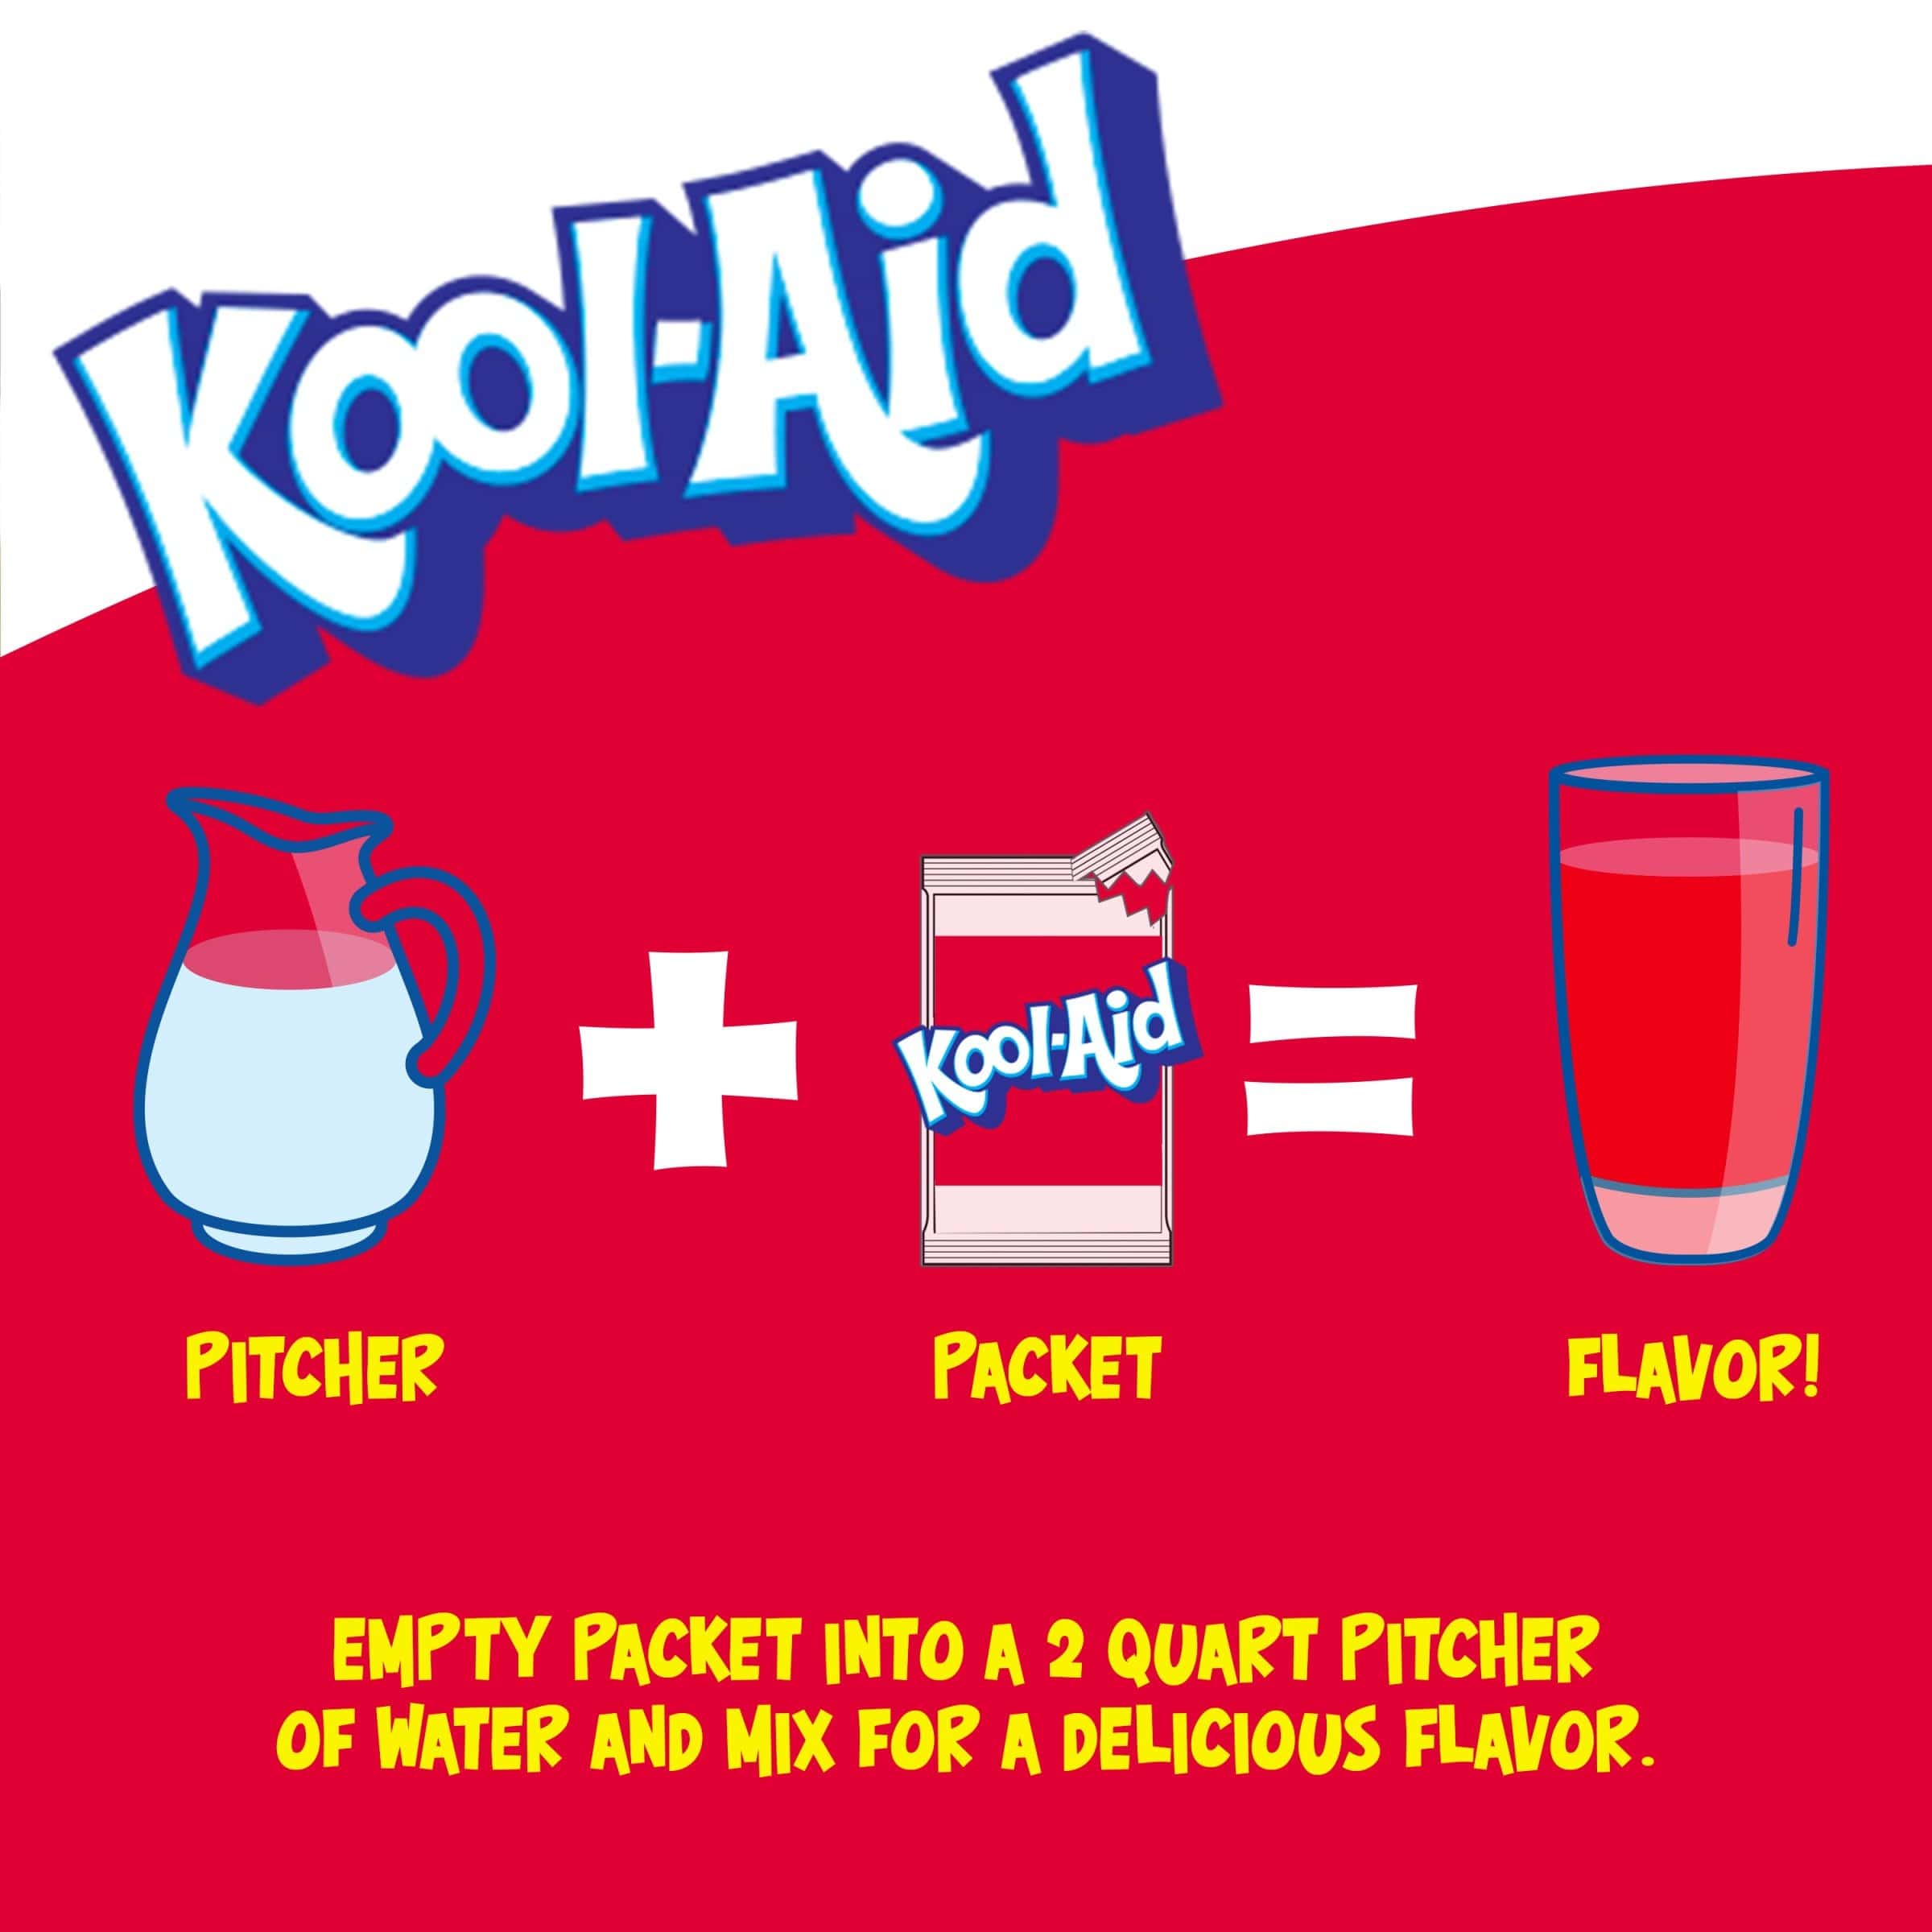 Une affiche blanc au-dessus et rouge en-dessous avec une carafe blanche, un paquet de KoolAid et un verre rempli de boisson rouge